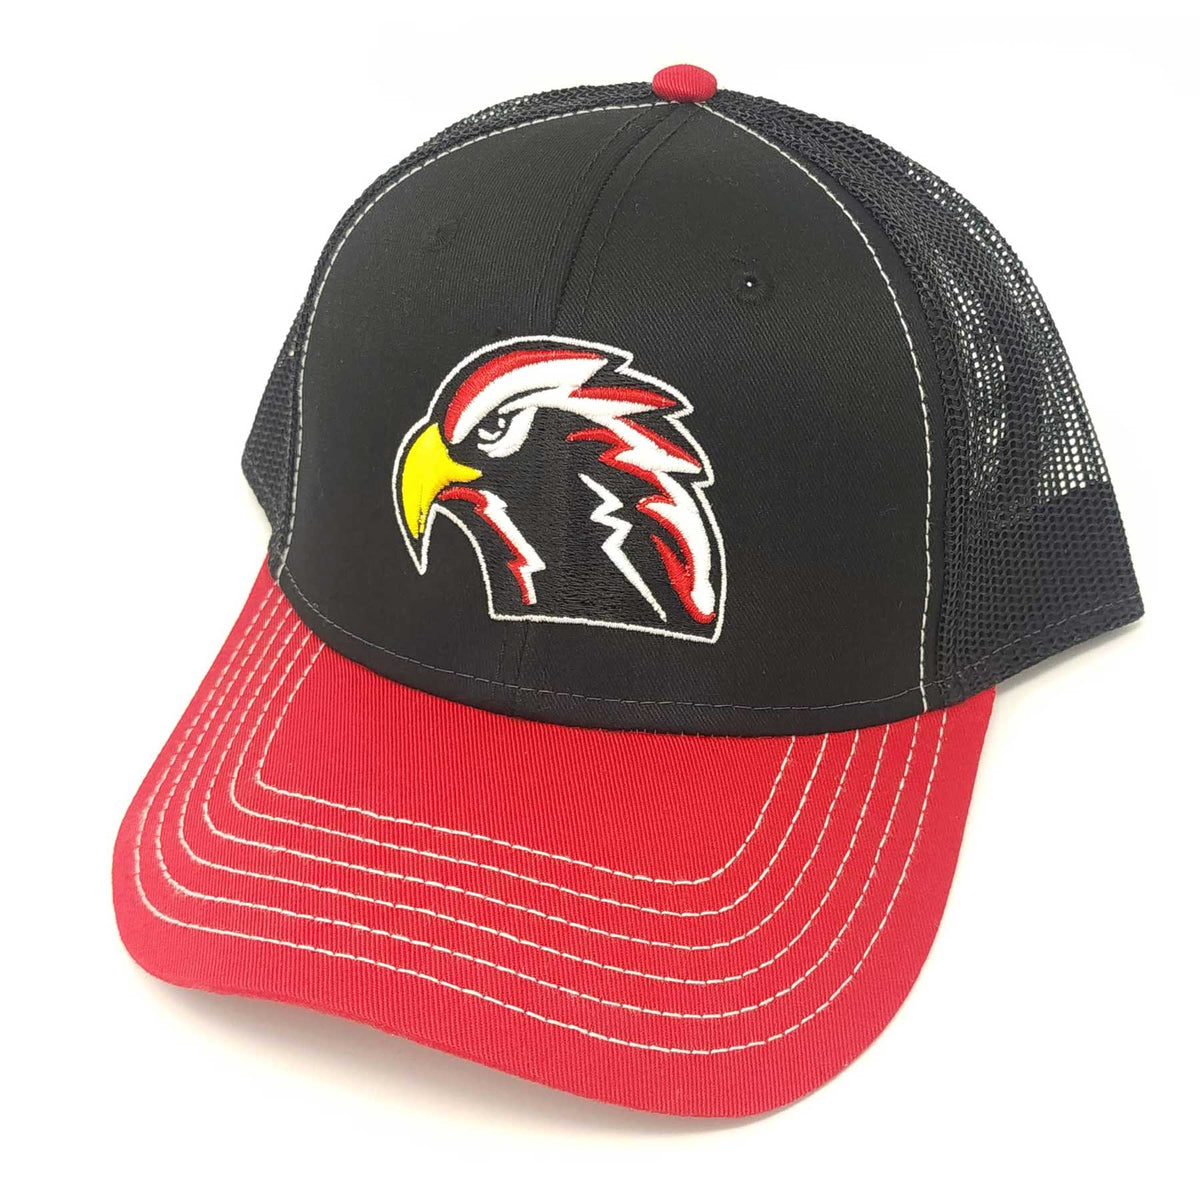 Centennial High School Hawks Trucker Hat